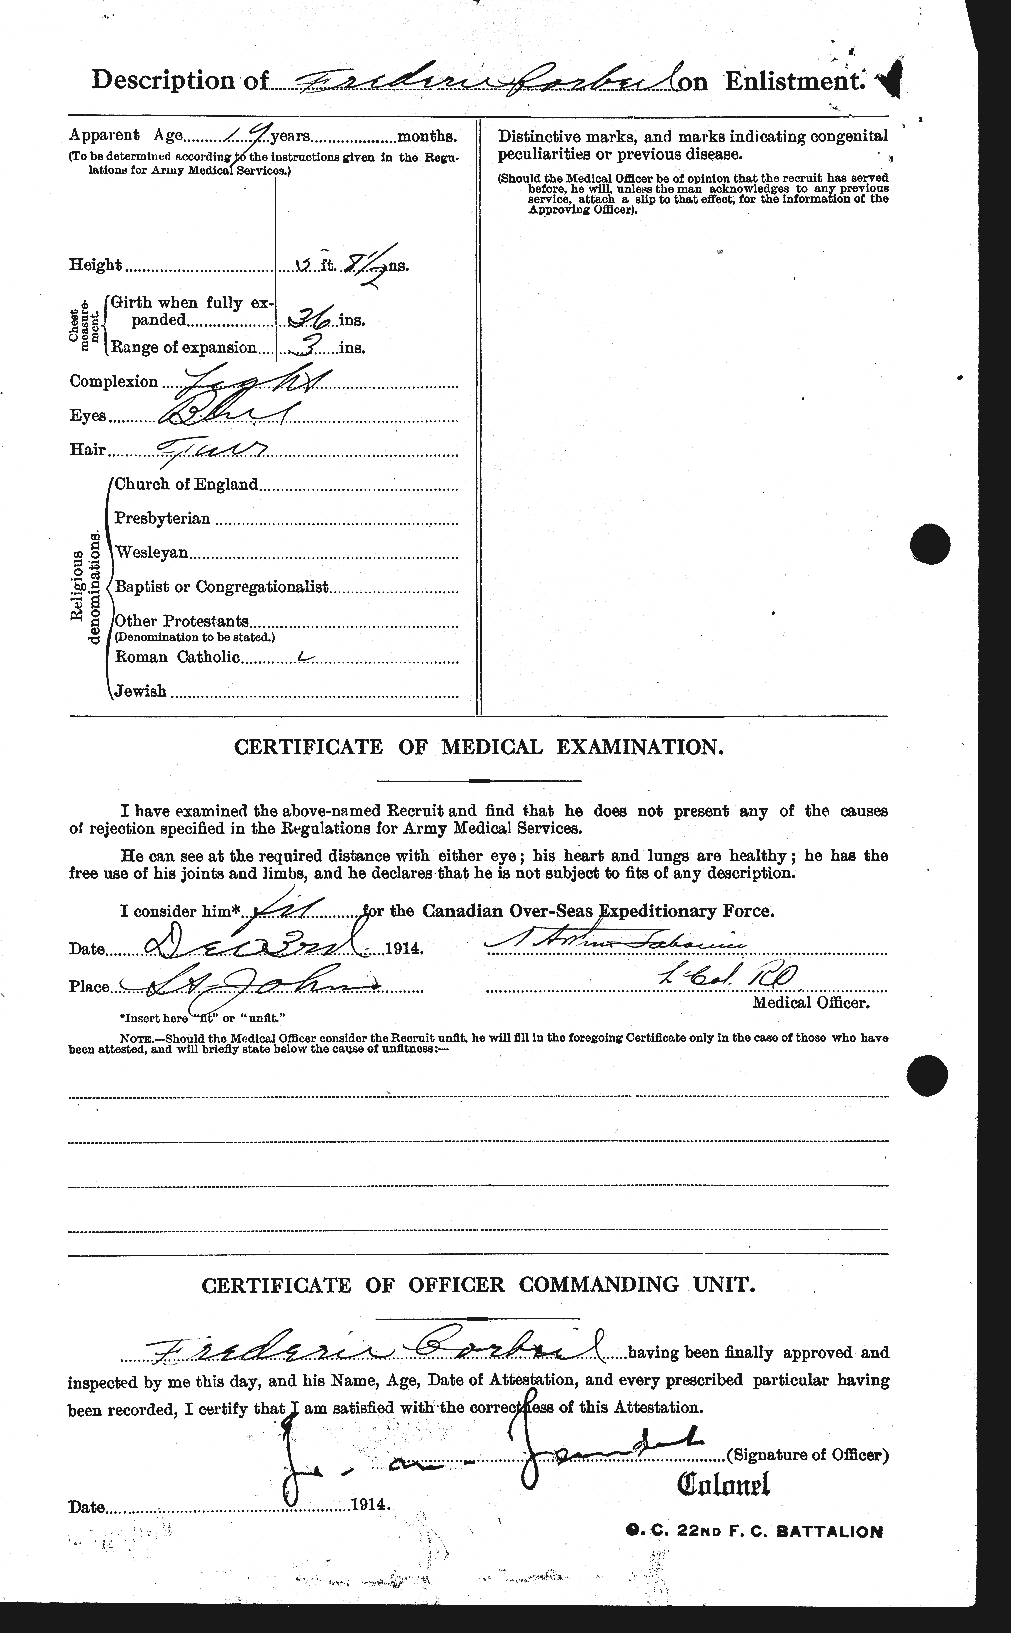 Dossiers du Personnel de la Première Guerre mondiale - CEC 055428b